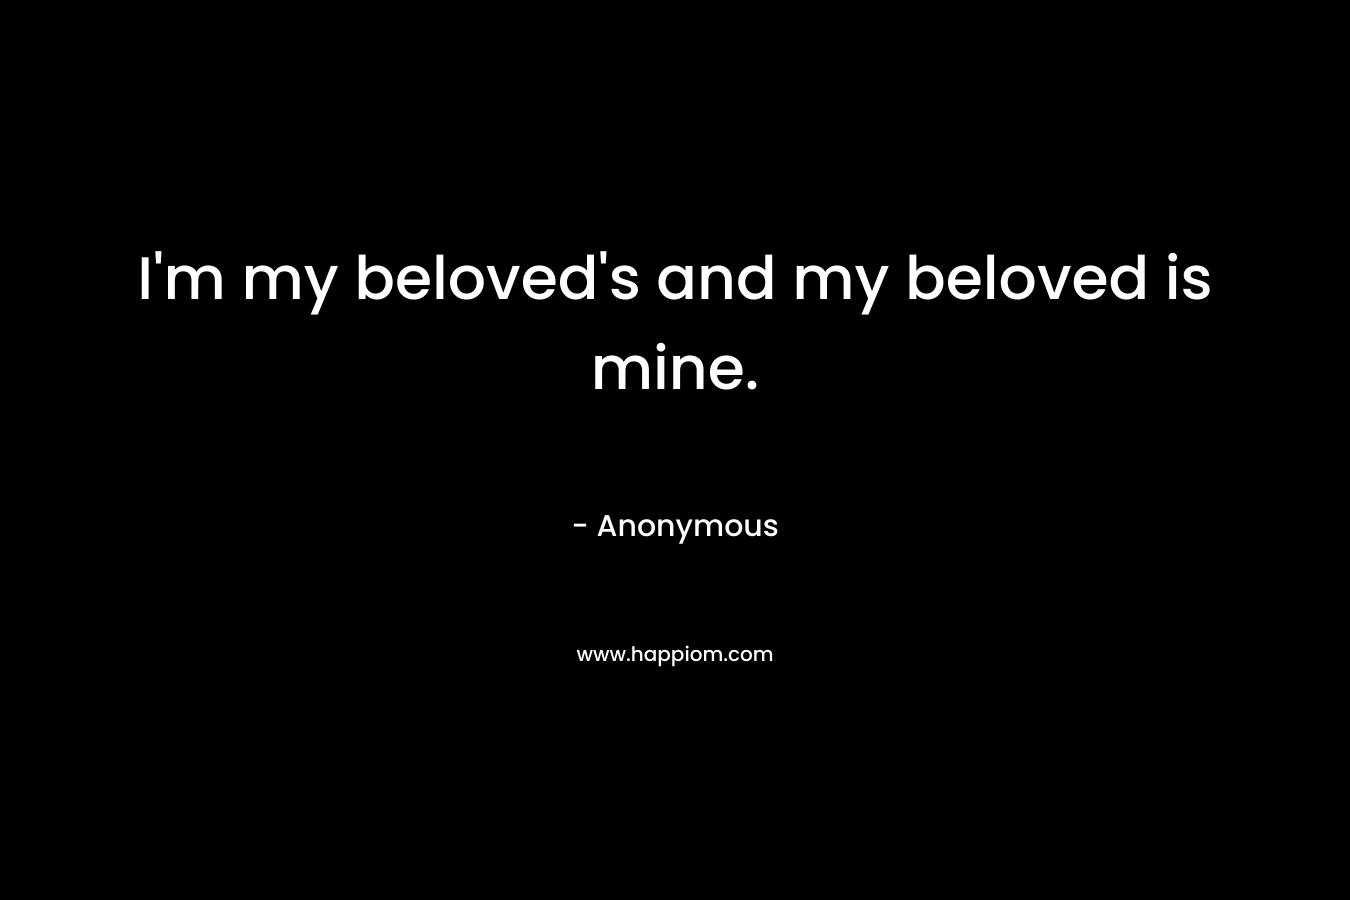 I'm my beloved's and my beloved is mine.